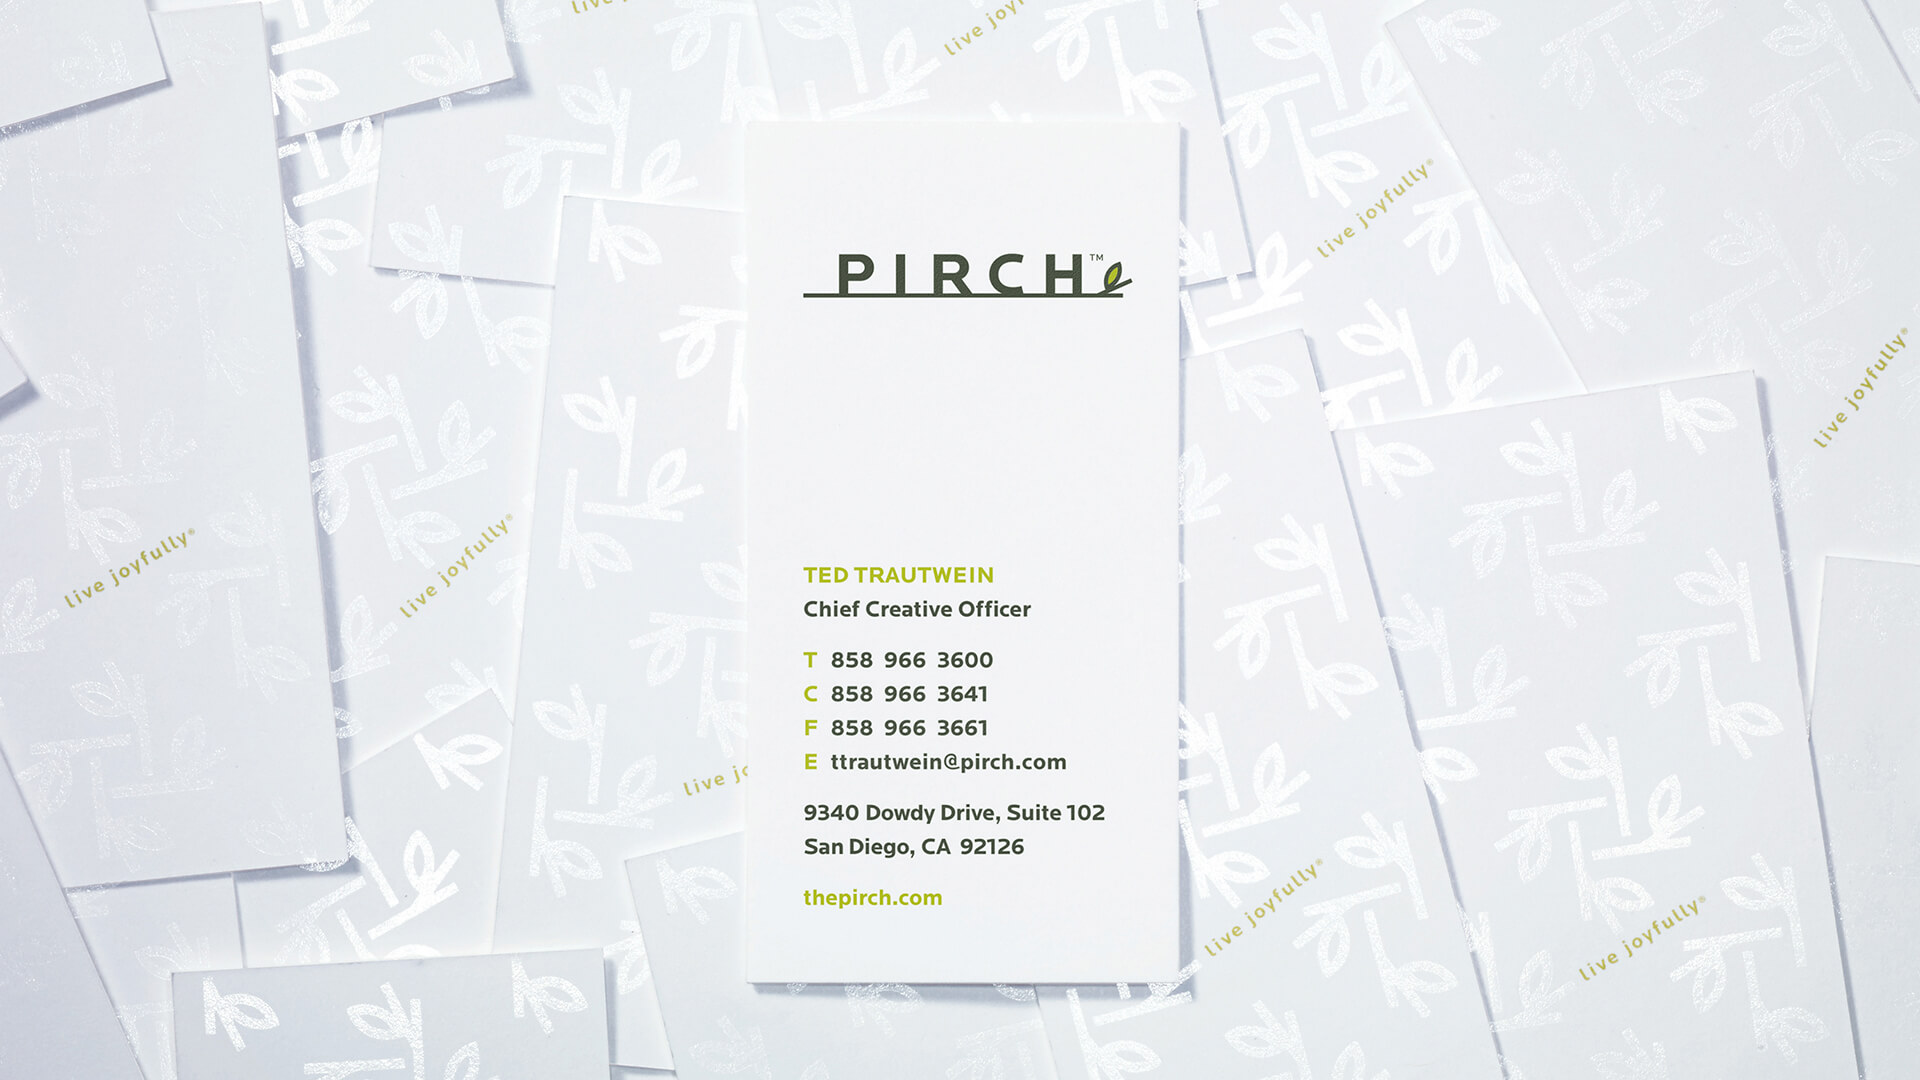 Pirch Miresball Business Cards